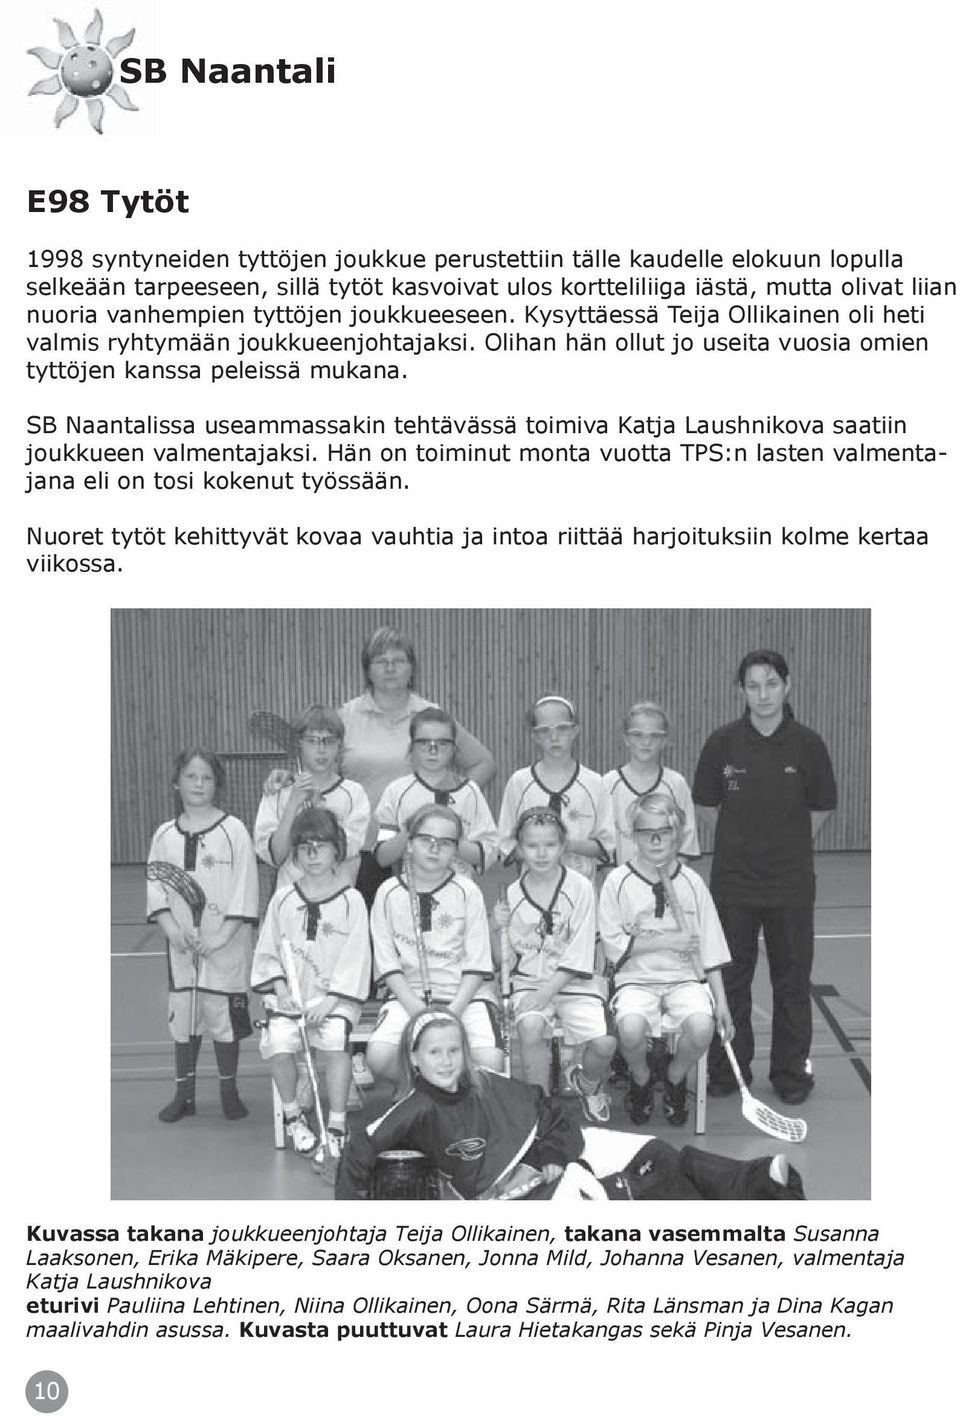 SB Naantalissa useammassakin tehtävässä toimiva Katja Laushnikova saatiin joukkueen valmentajaksi. Hän on toiminut monta vuotta TPS:n lasten valmentajana eli on tosi kokenut työssään.